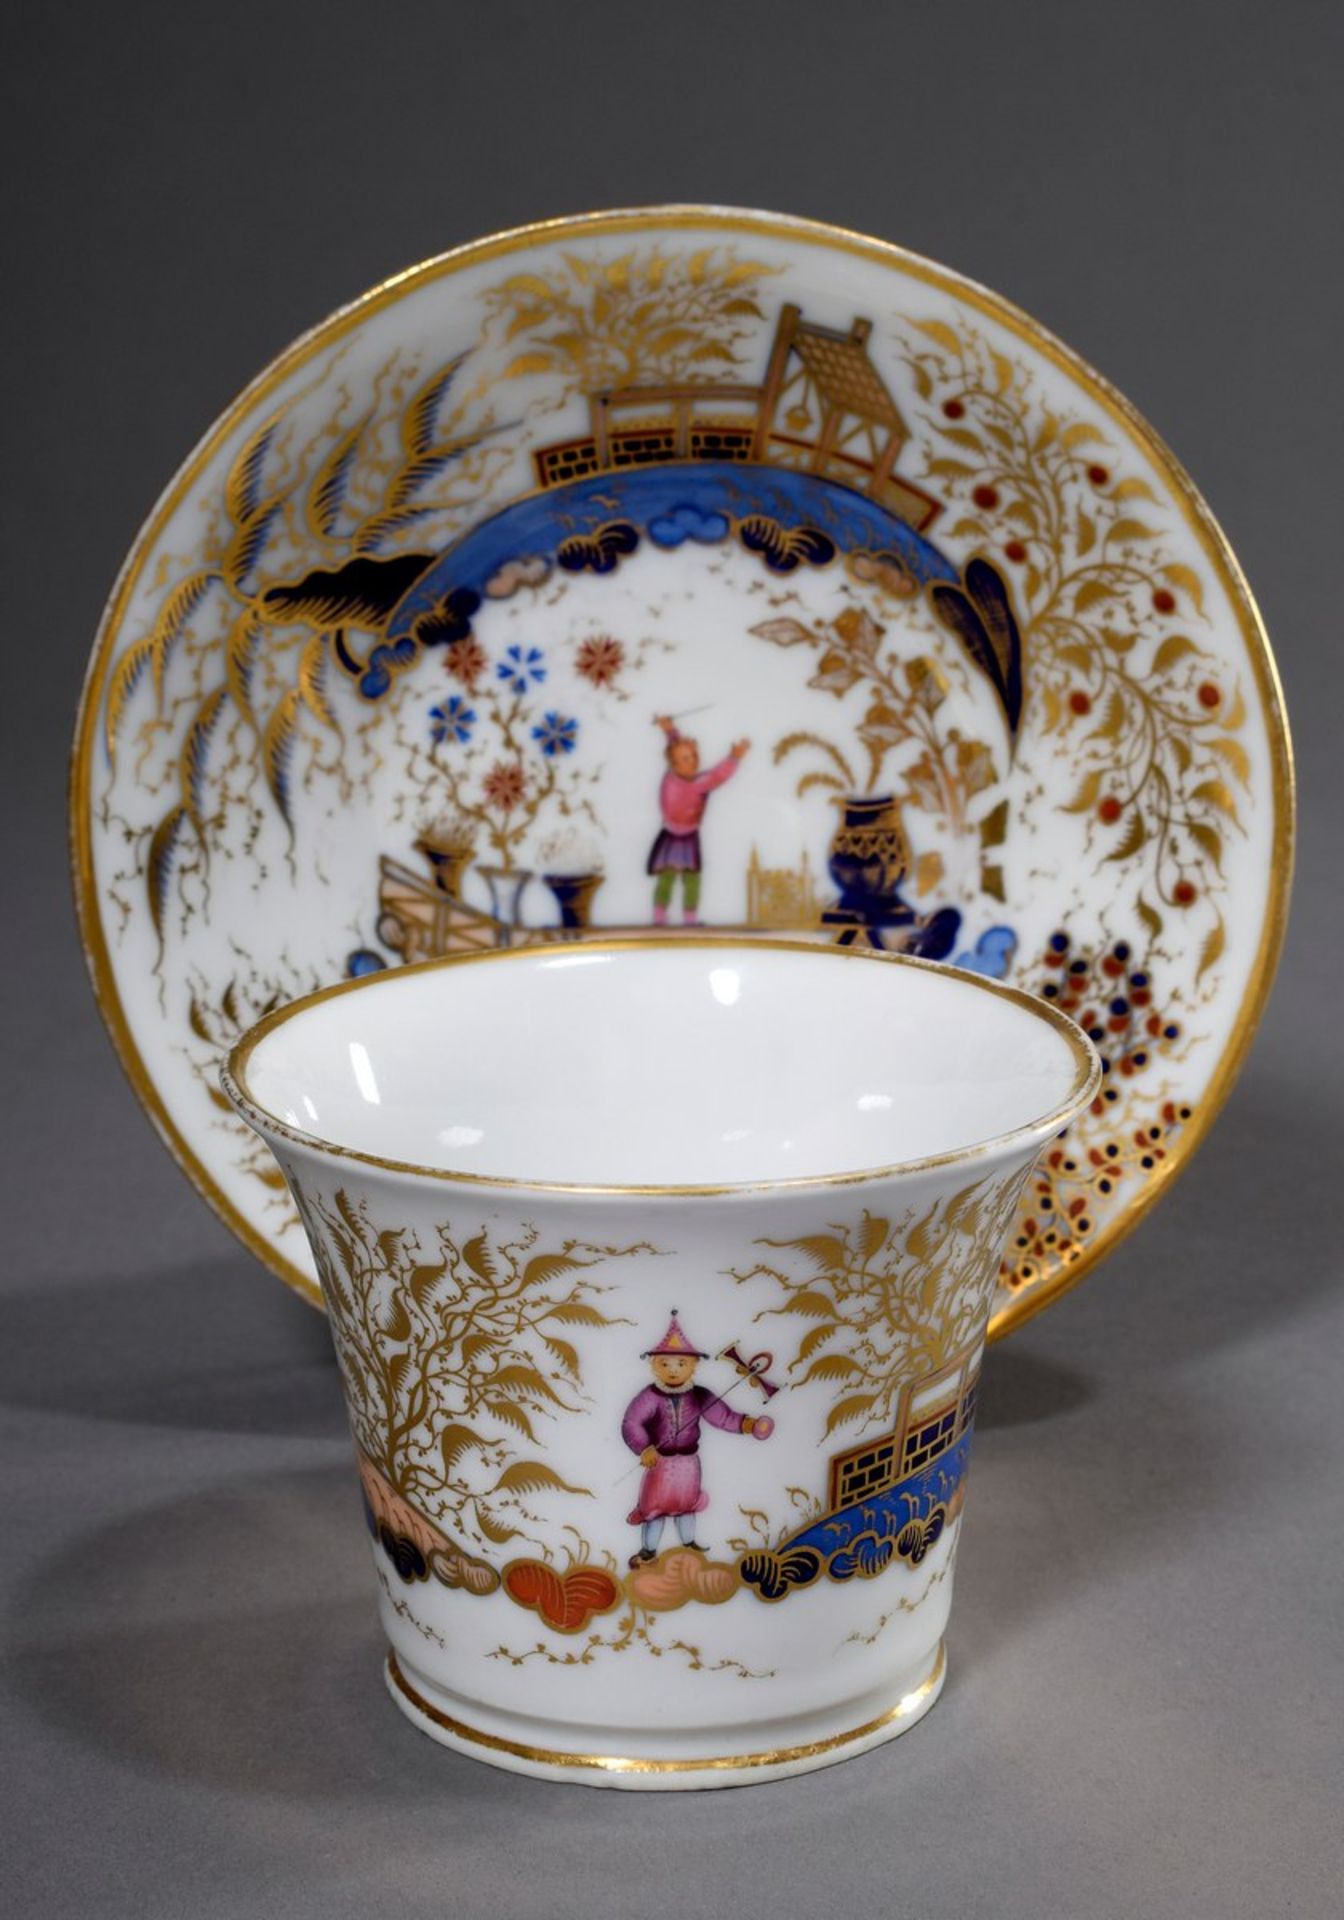 Englische Porzellan Tasse im chinesischen Stil "Landschaft mit Figuren", farbig bemalt, mit - Bild 3 aus 6